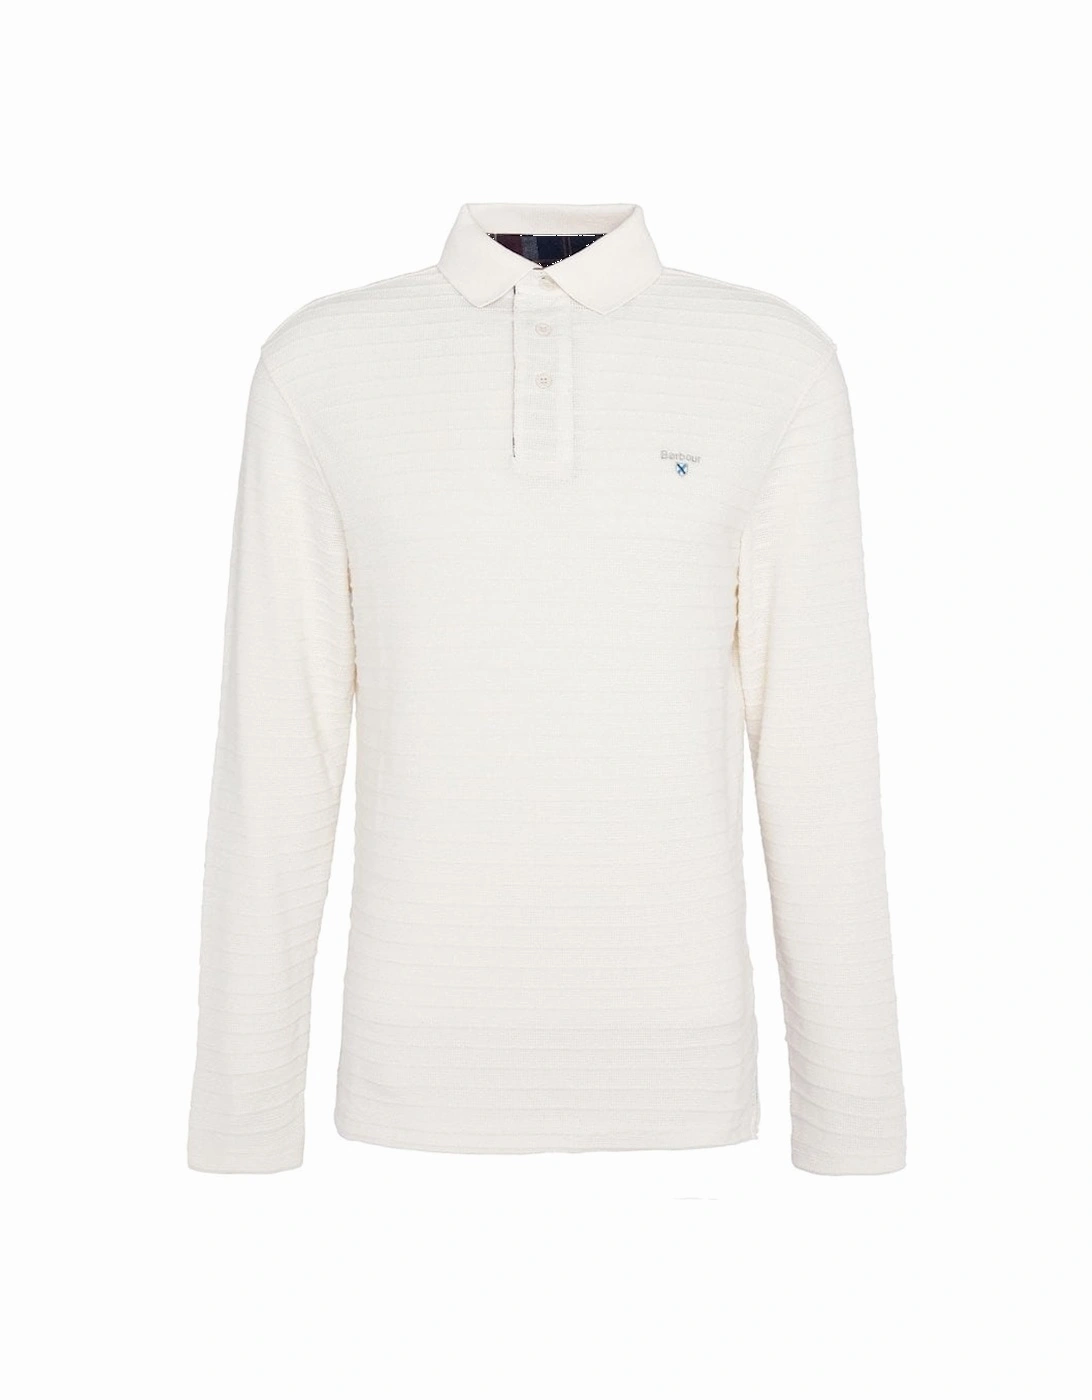 Men's Antique White Long Sleeved Cramlington Polo Shirt, 5 of 4